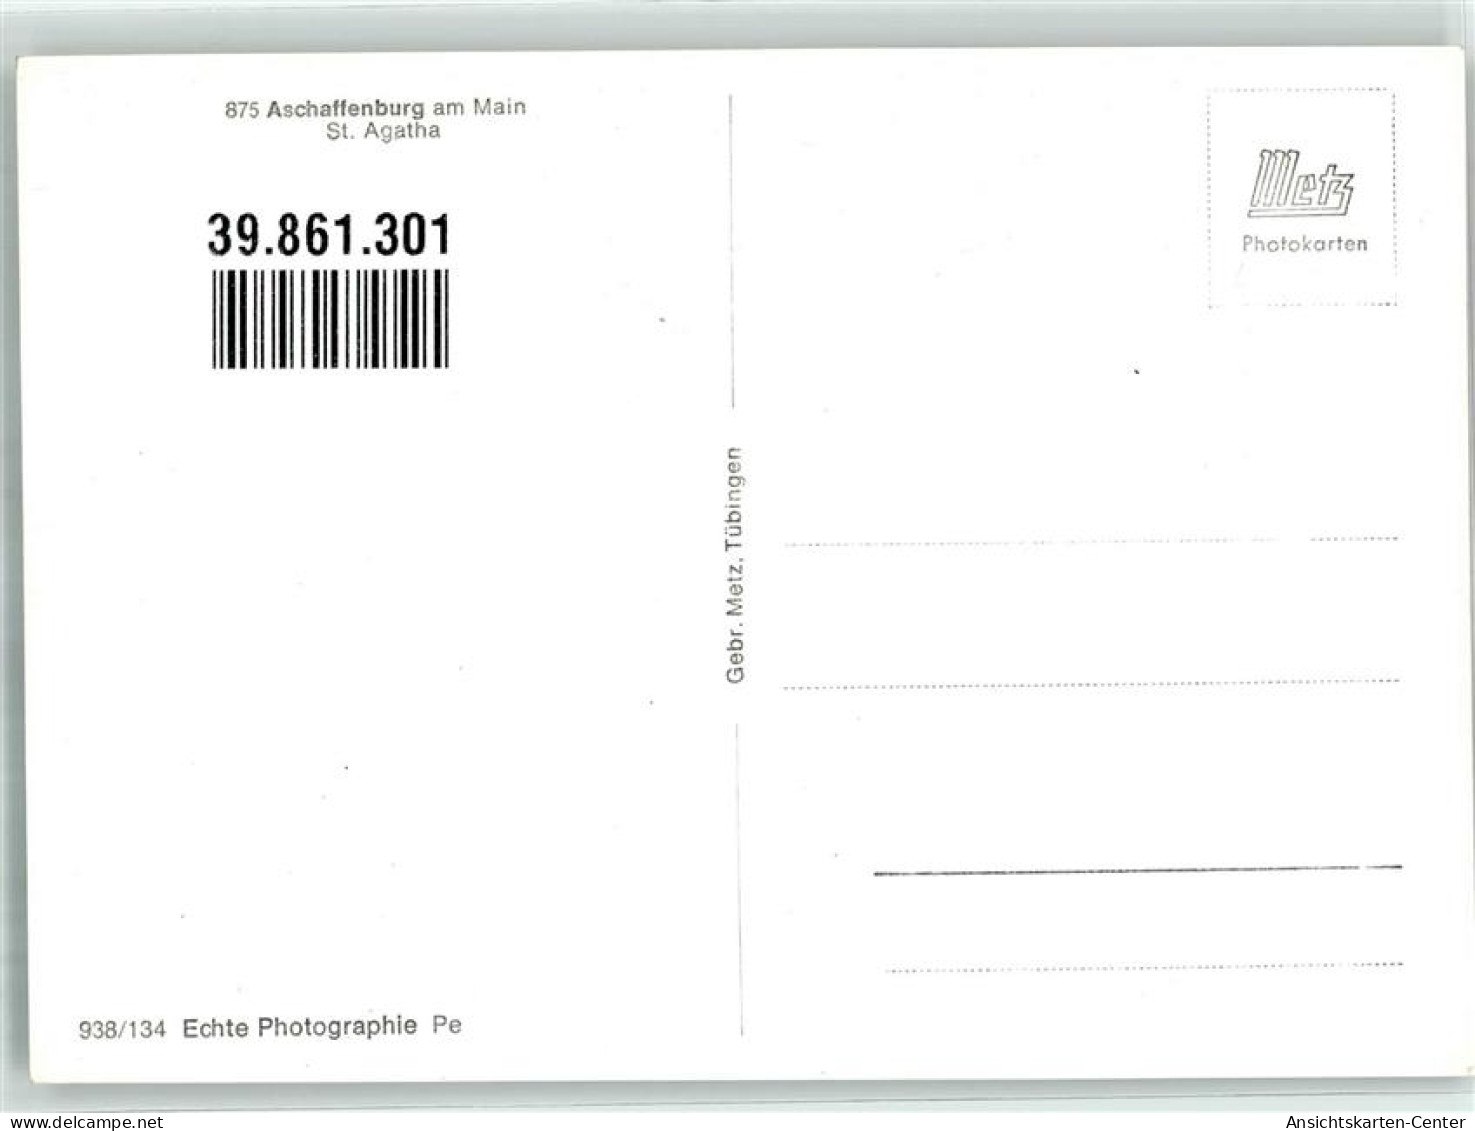 39861301 - Aschaffenburg - Aschaffenburg